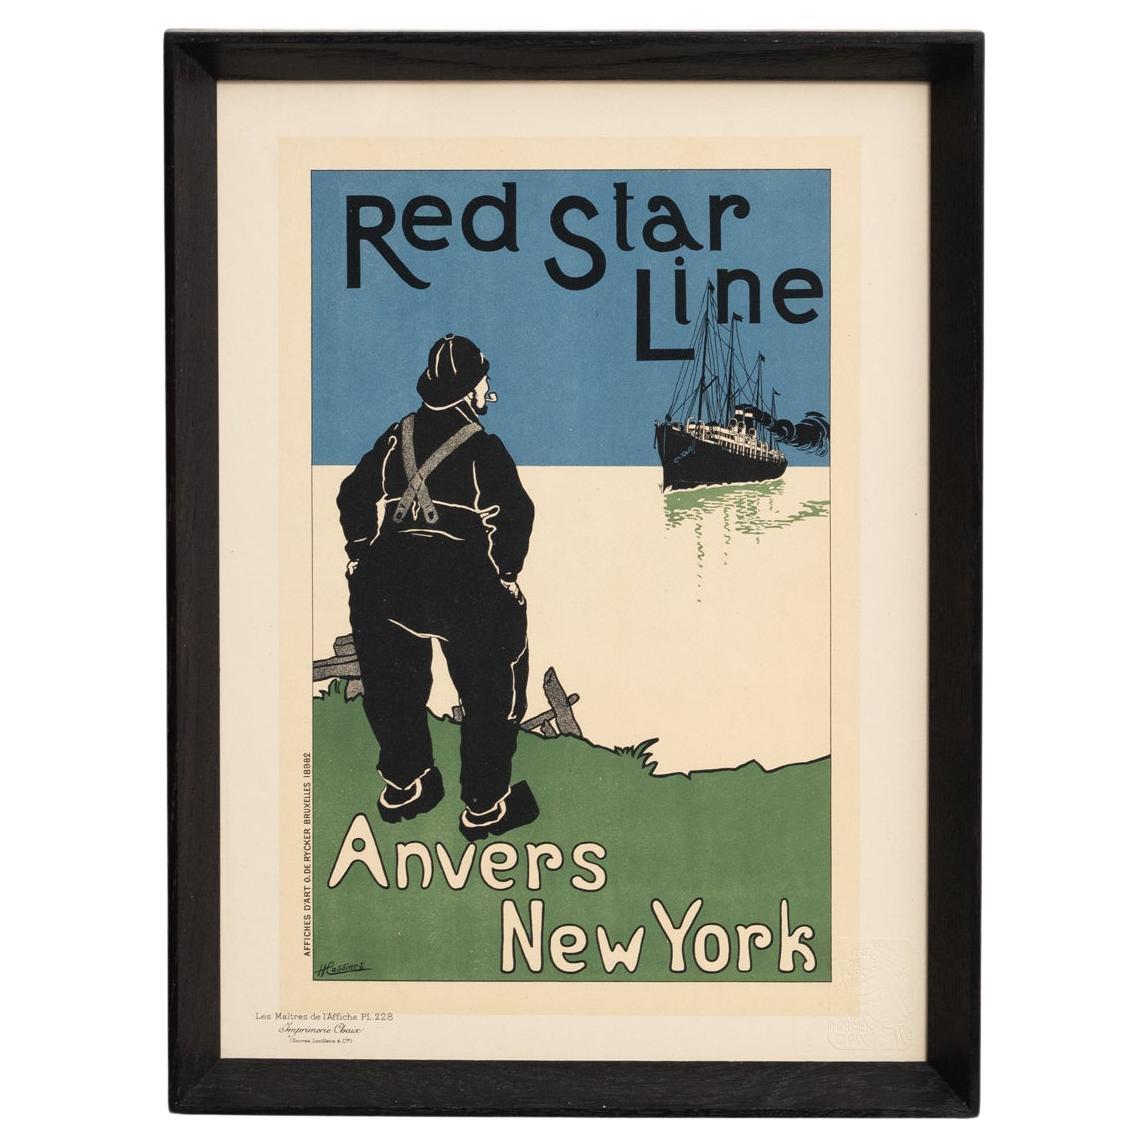 Red Star Line Artwork by H. Cassiers by Les Maitres de l'Affiche, circa 1930